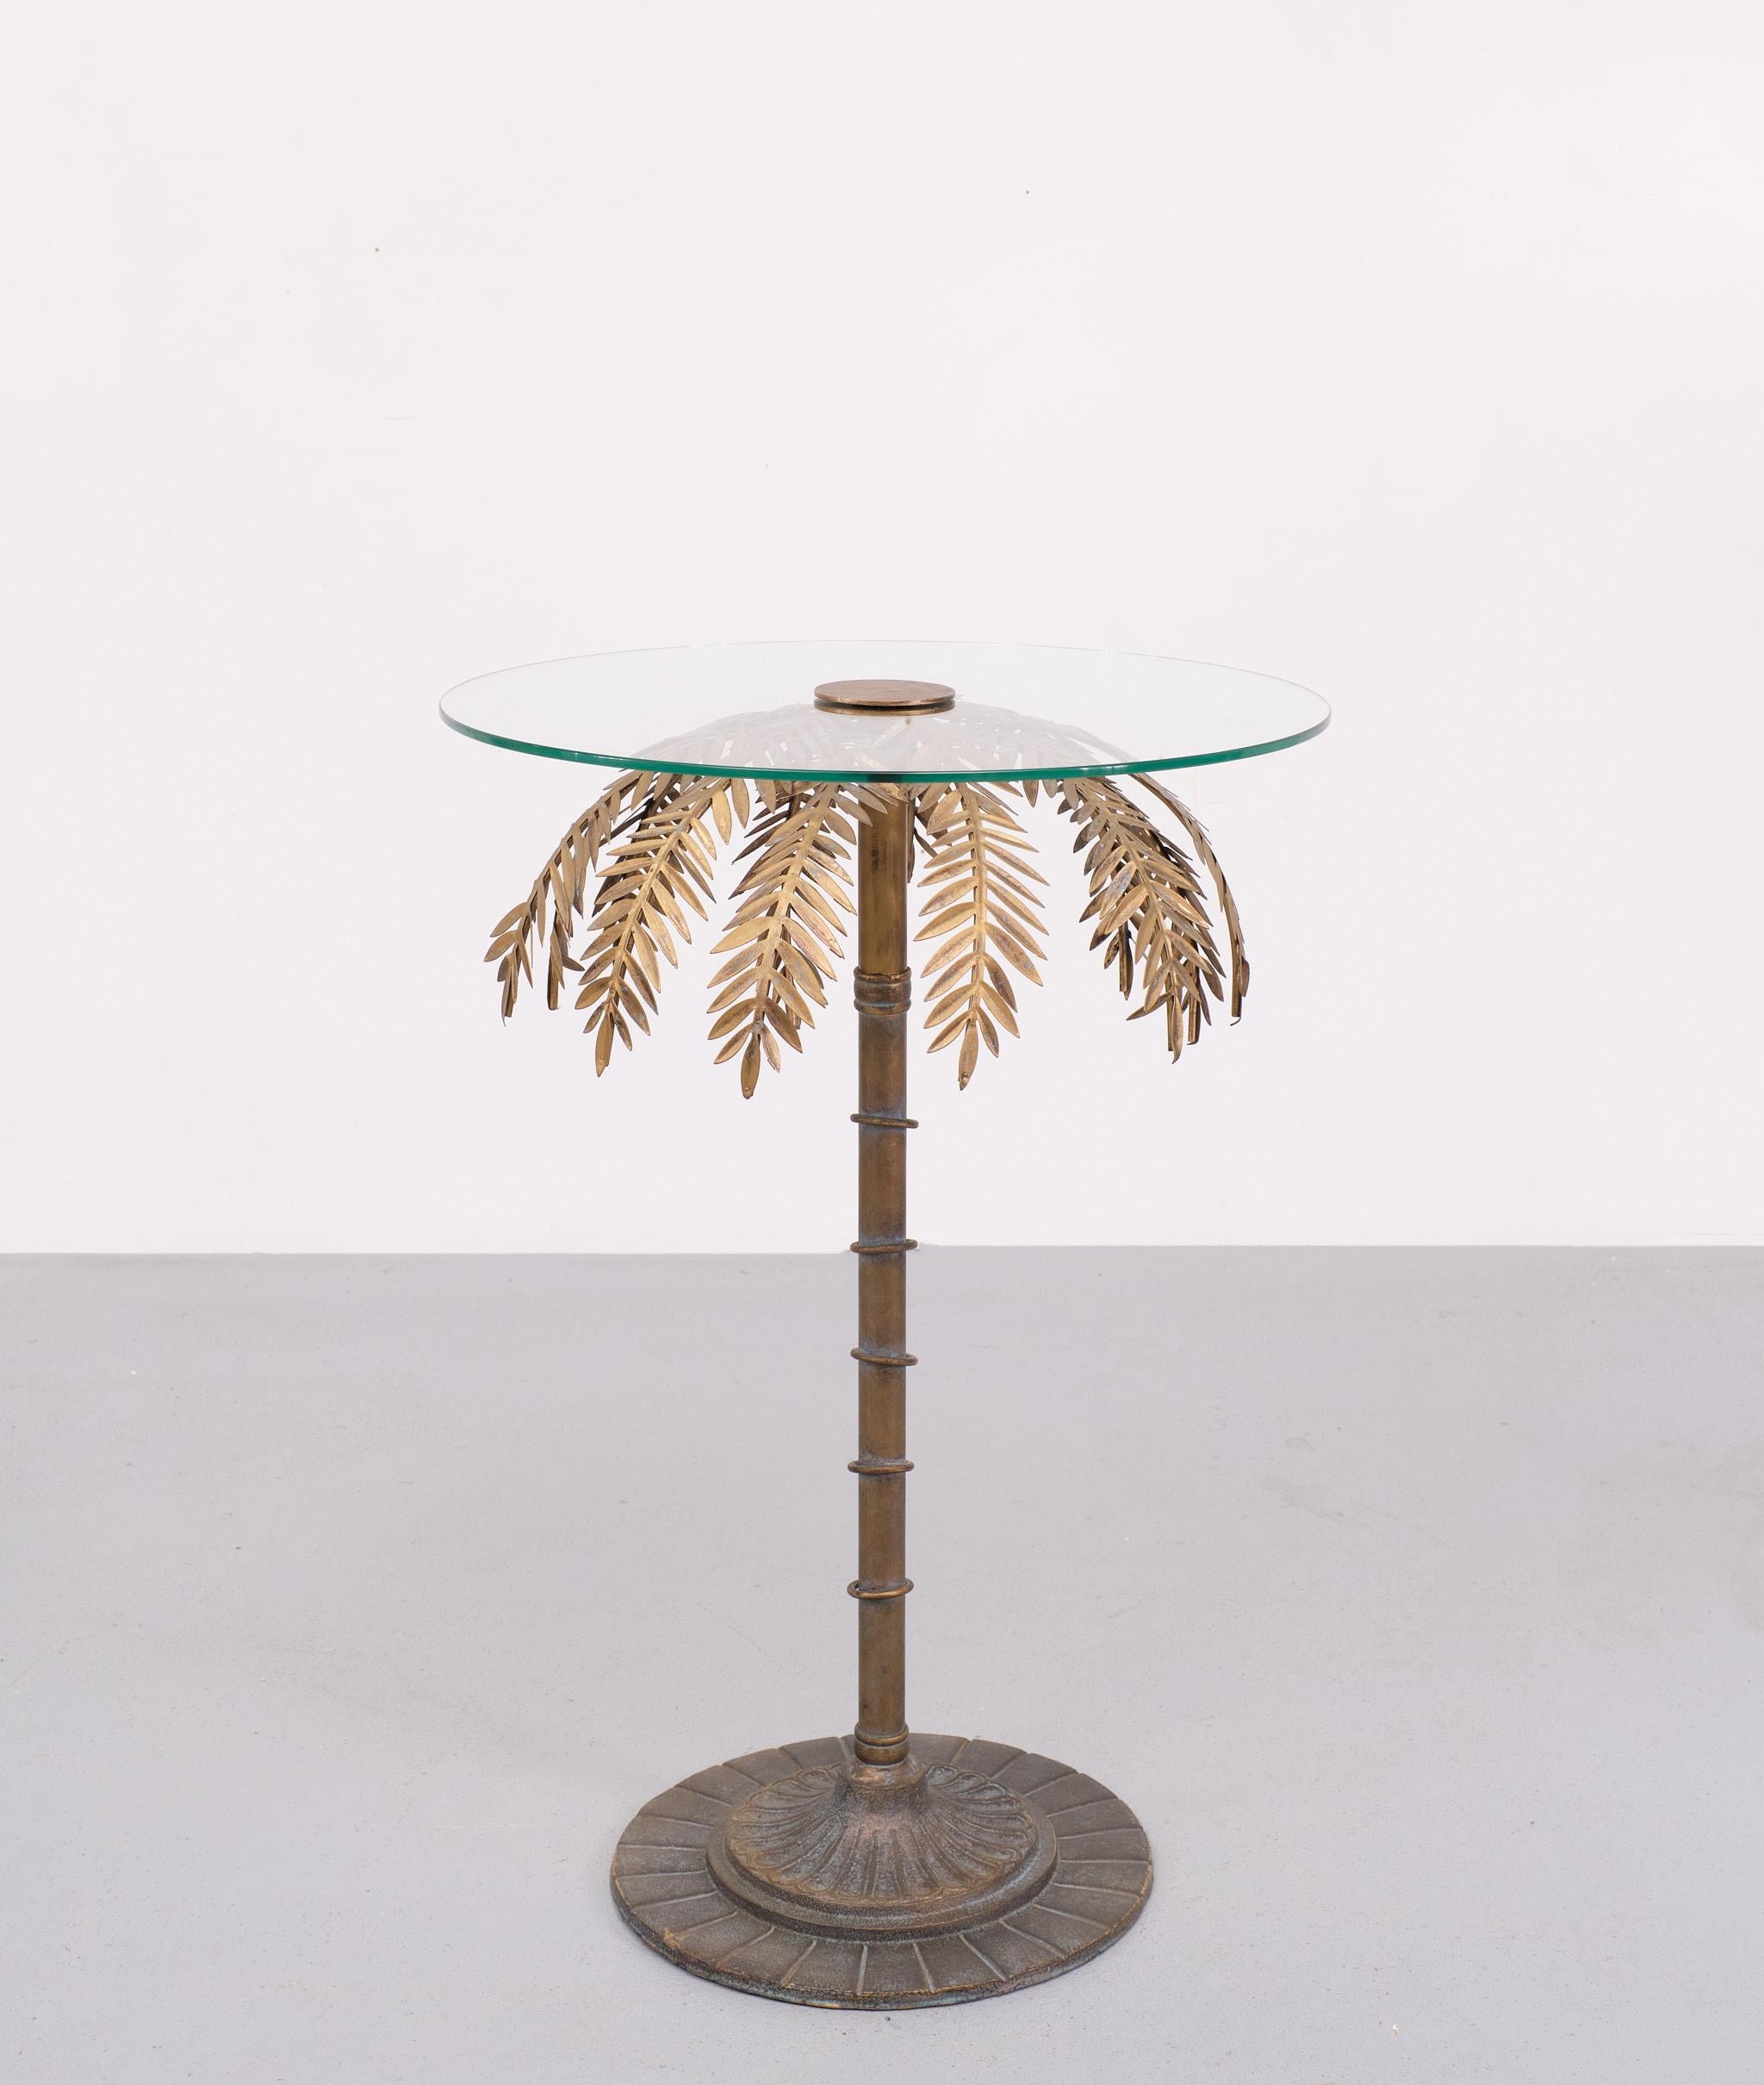 Très belle table d'appoint en forme de palmier, livrée avec un plateau en verre neuf.
Couleur bronze, le style Maison Jansen  .

N'hésitez pas à nous contacter pour obtenir un autre devis d'expédition.